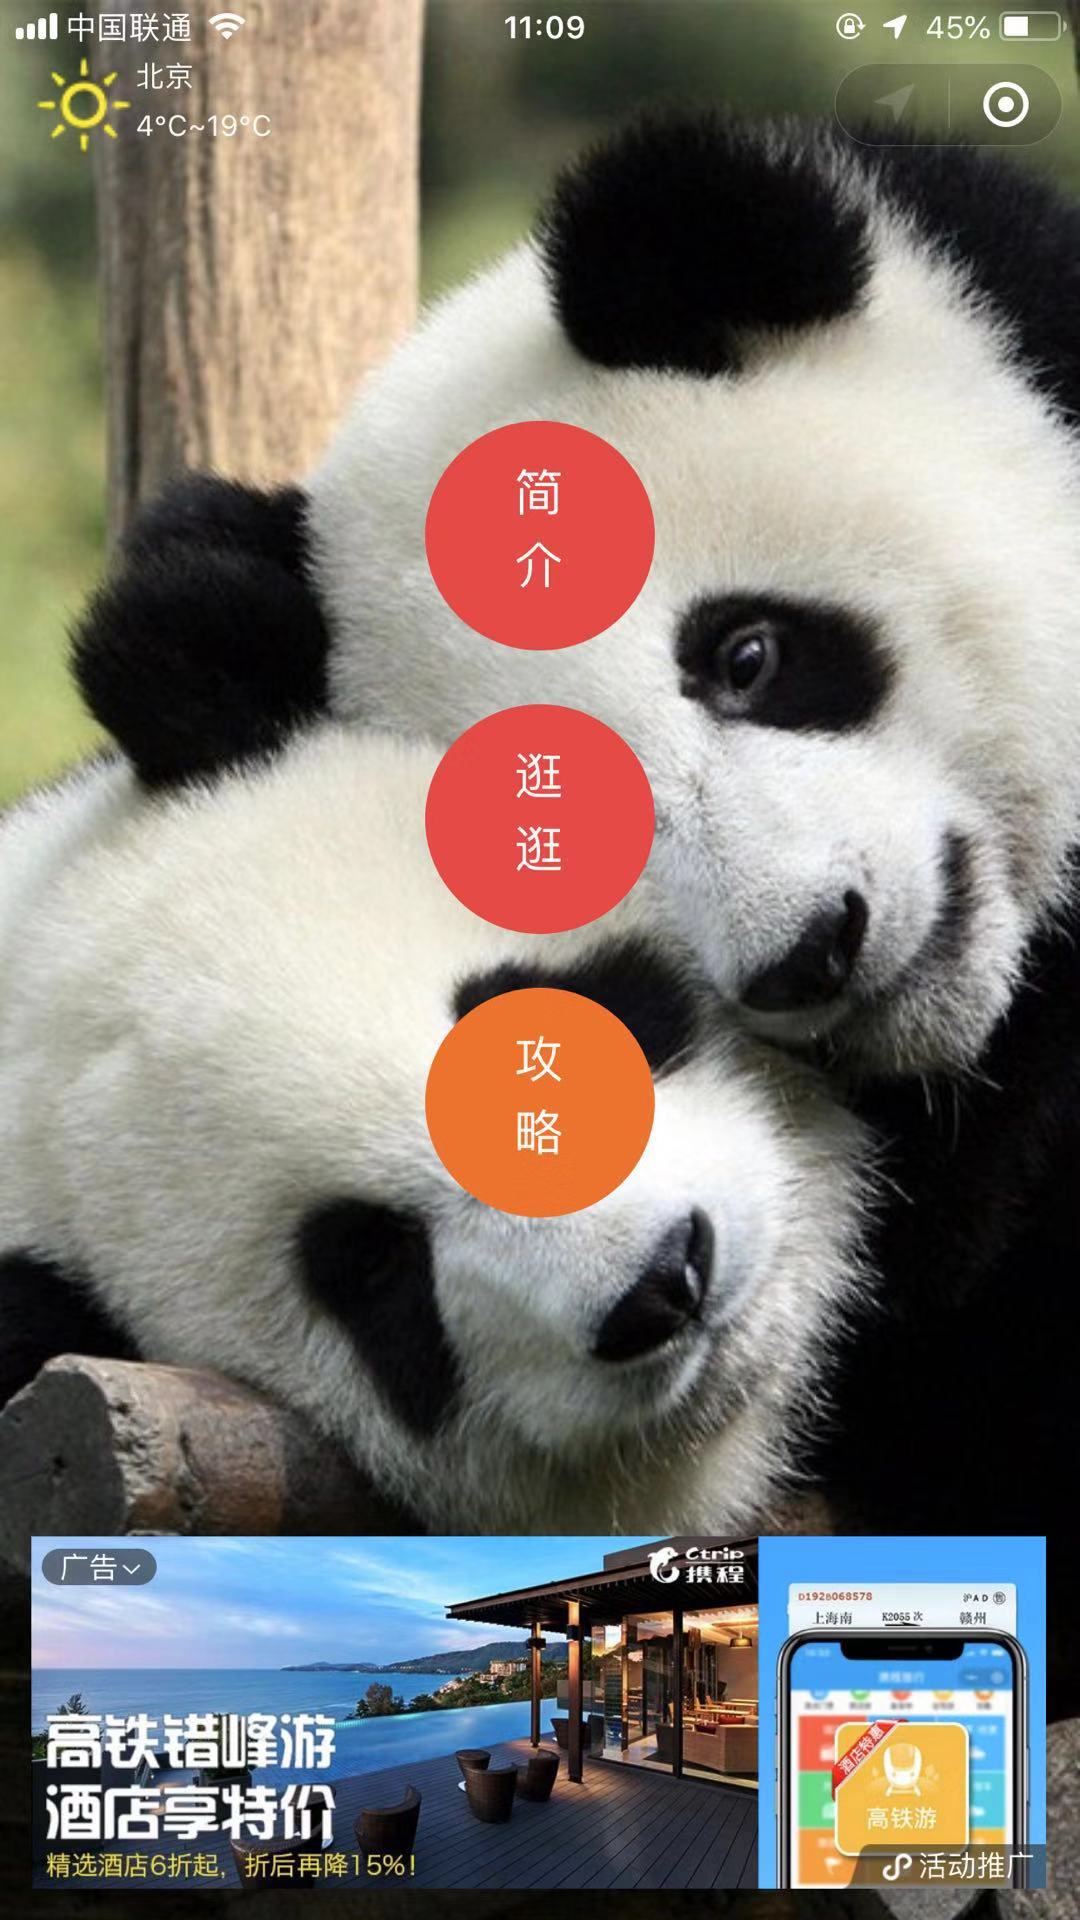 北京动物园导览_北京动物园导览小程序_北京动物园导览微信小程序